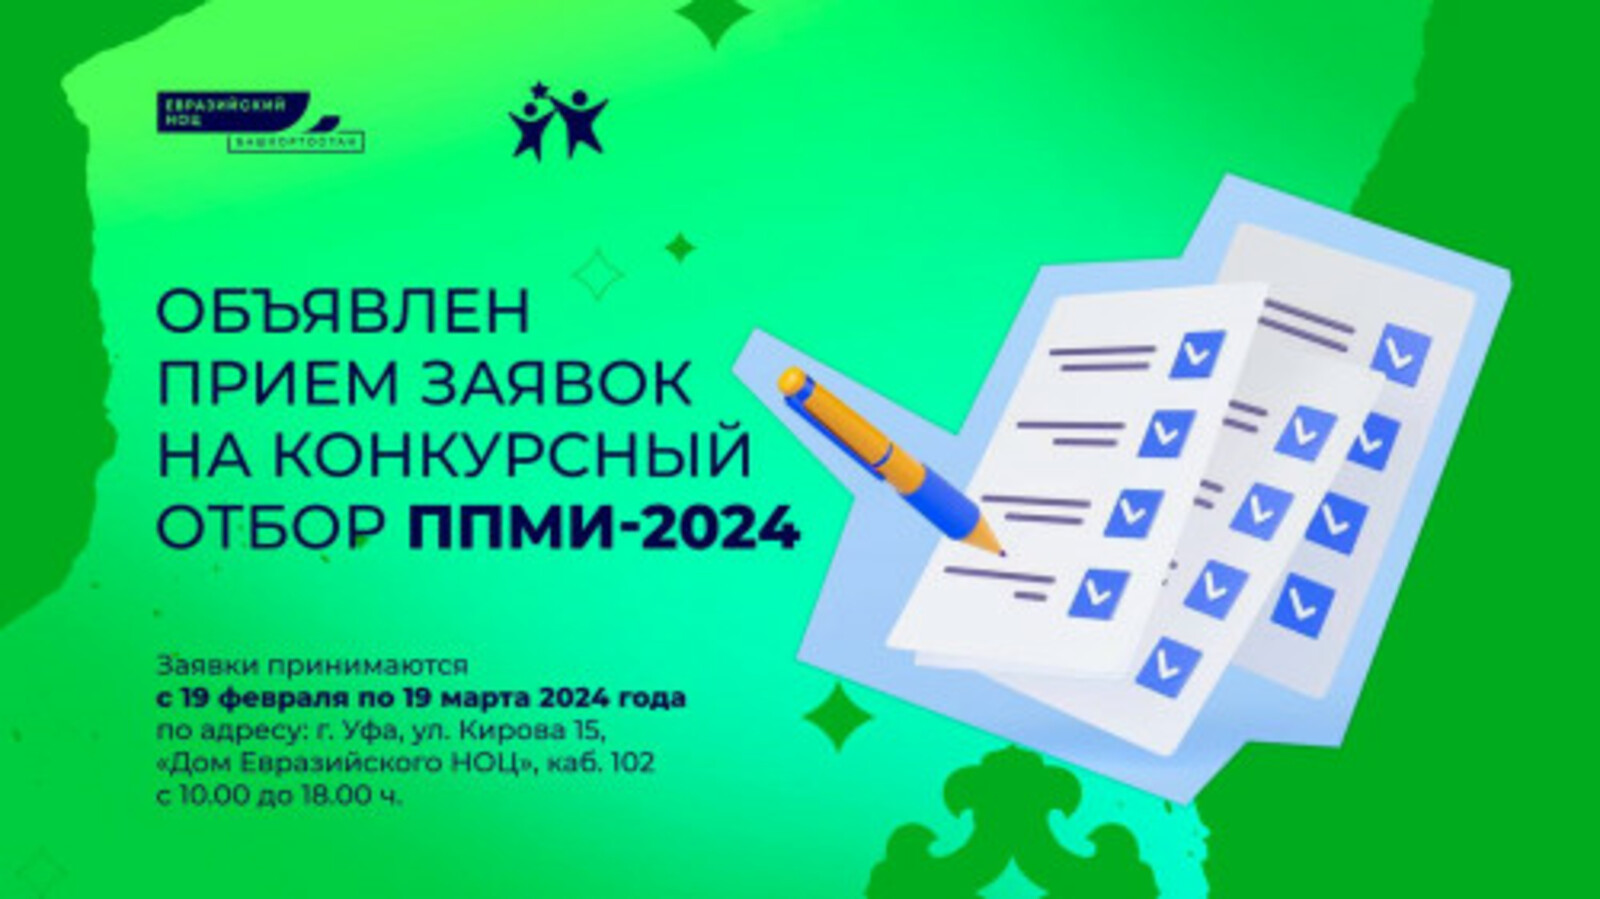 В Башкирии пройдет конкурсный отбор Программы поддержки местных инициатив – 2024